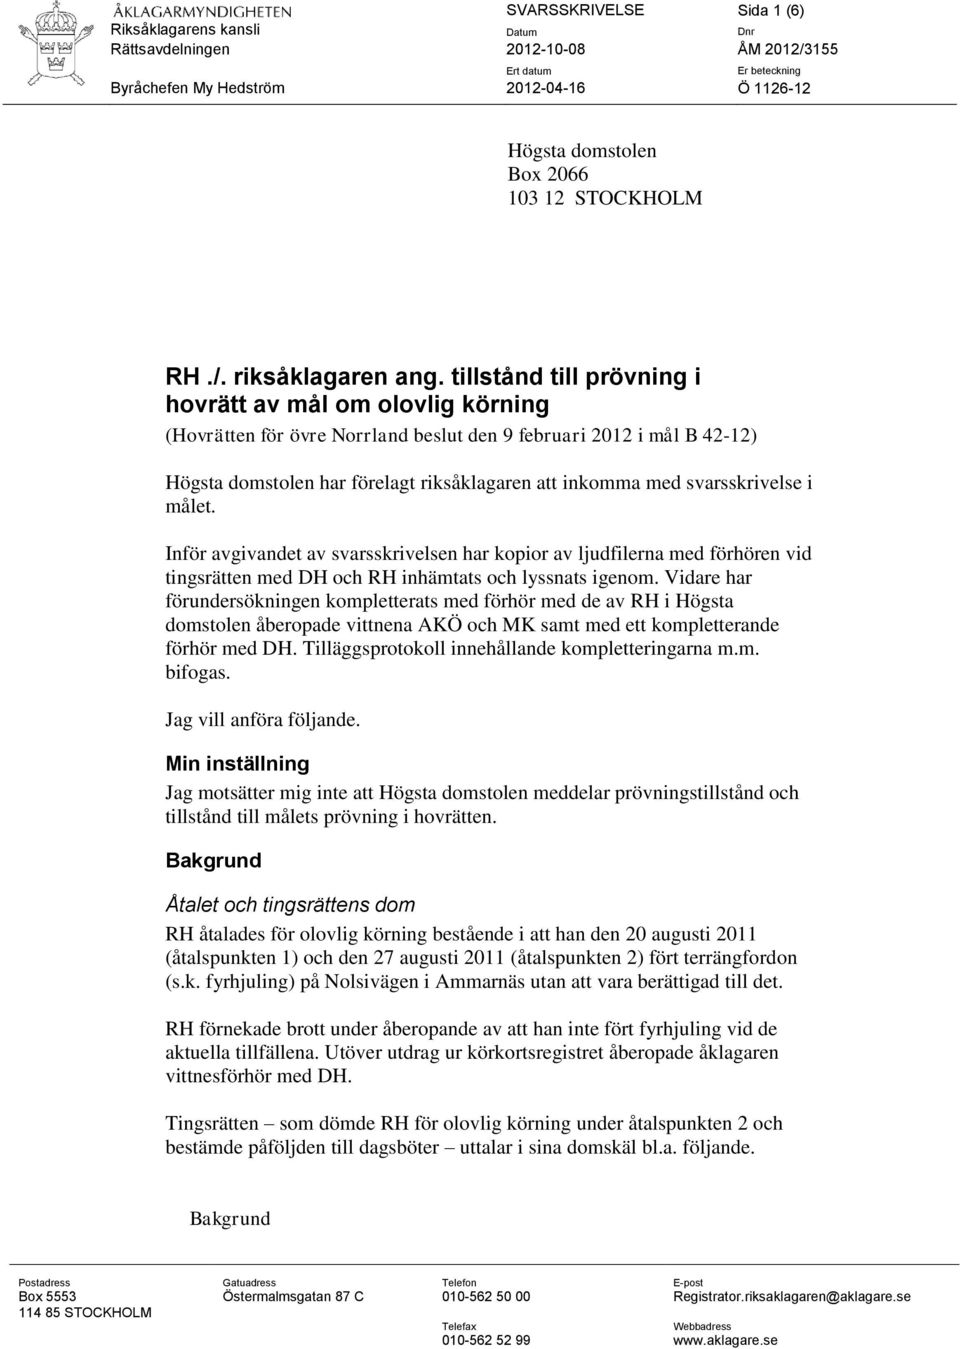 tillstånd till prövning i hovrätt av mål om olovlig körning (Hovrätten för övre Norrland beslut den 9 februari 2012 i mål B 42-12) Högsta domstolen har förelagt riksåklagaren att inkomma med